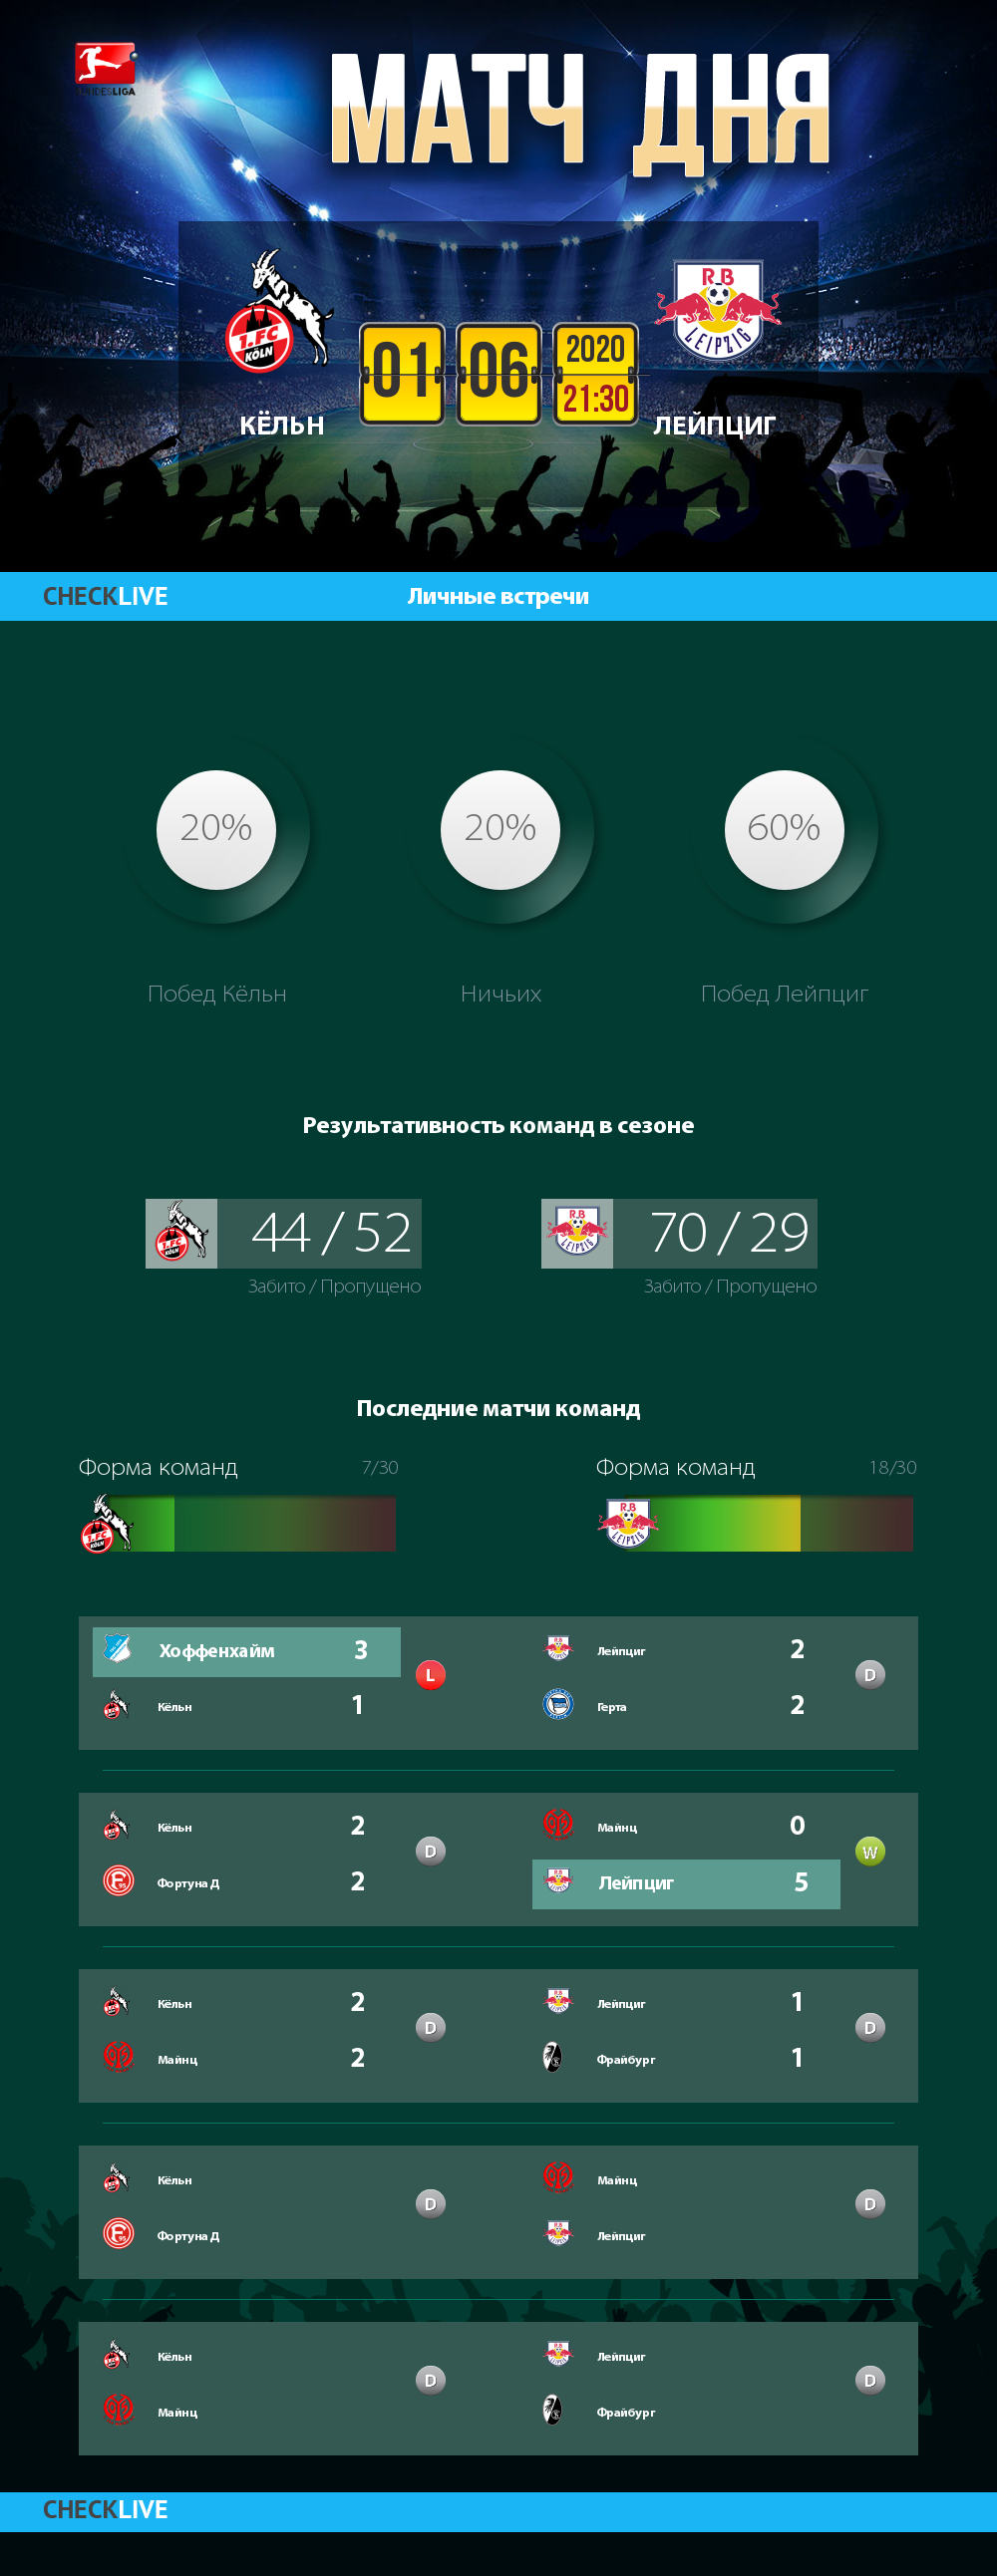 Инфографика Кёльн и Лейпциг матч дня 01.06.2020